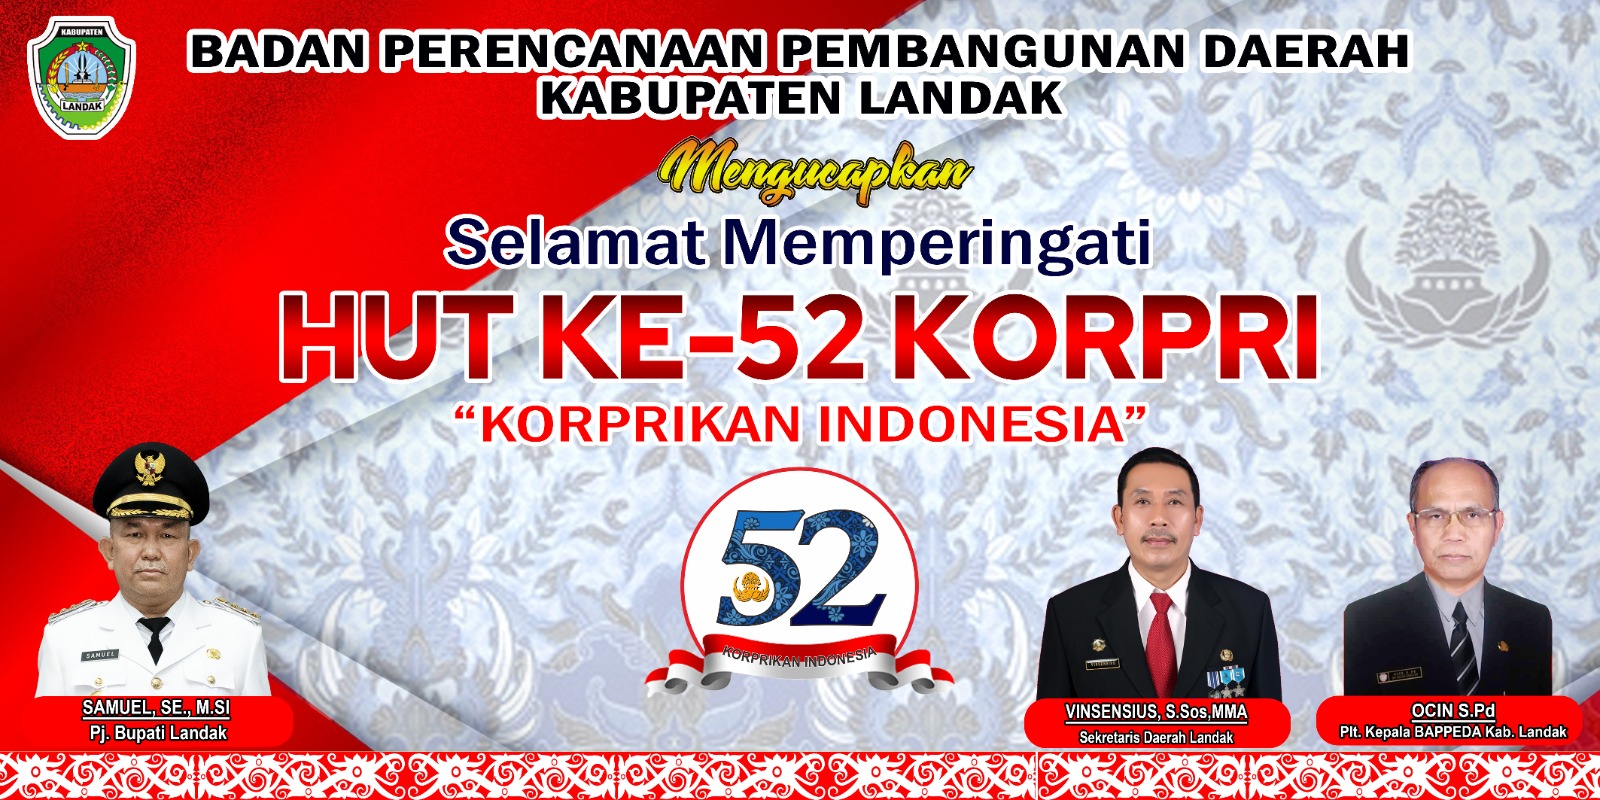 Gambar DIRGAHAYU REPUBLIK INDONESIA KE-78